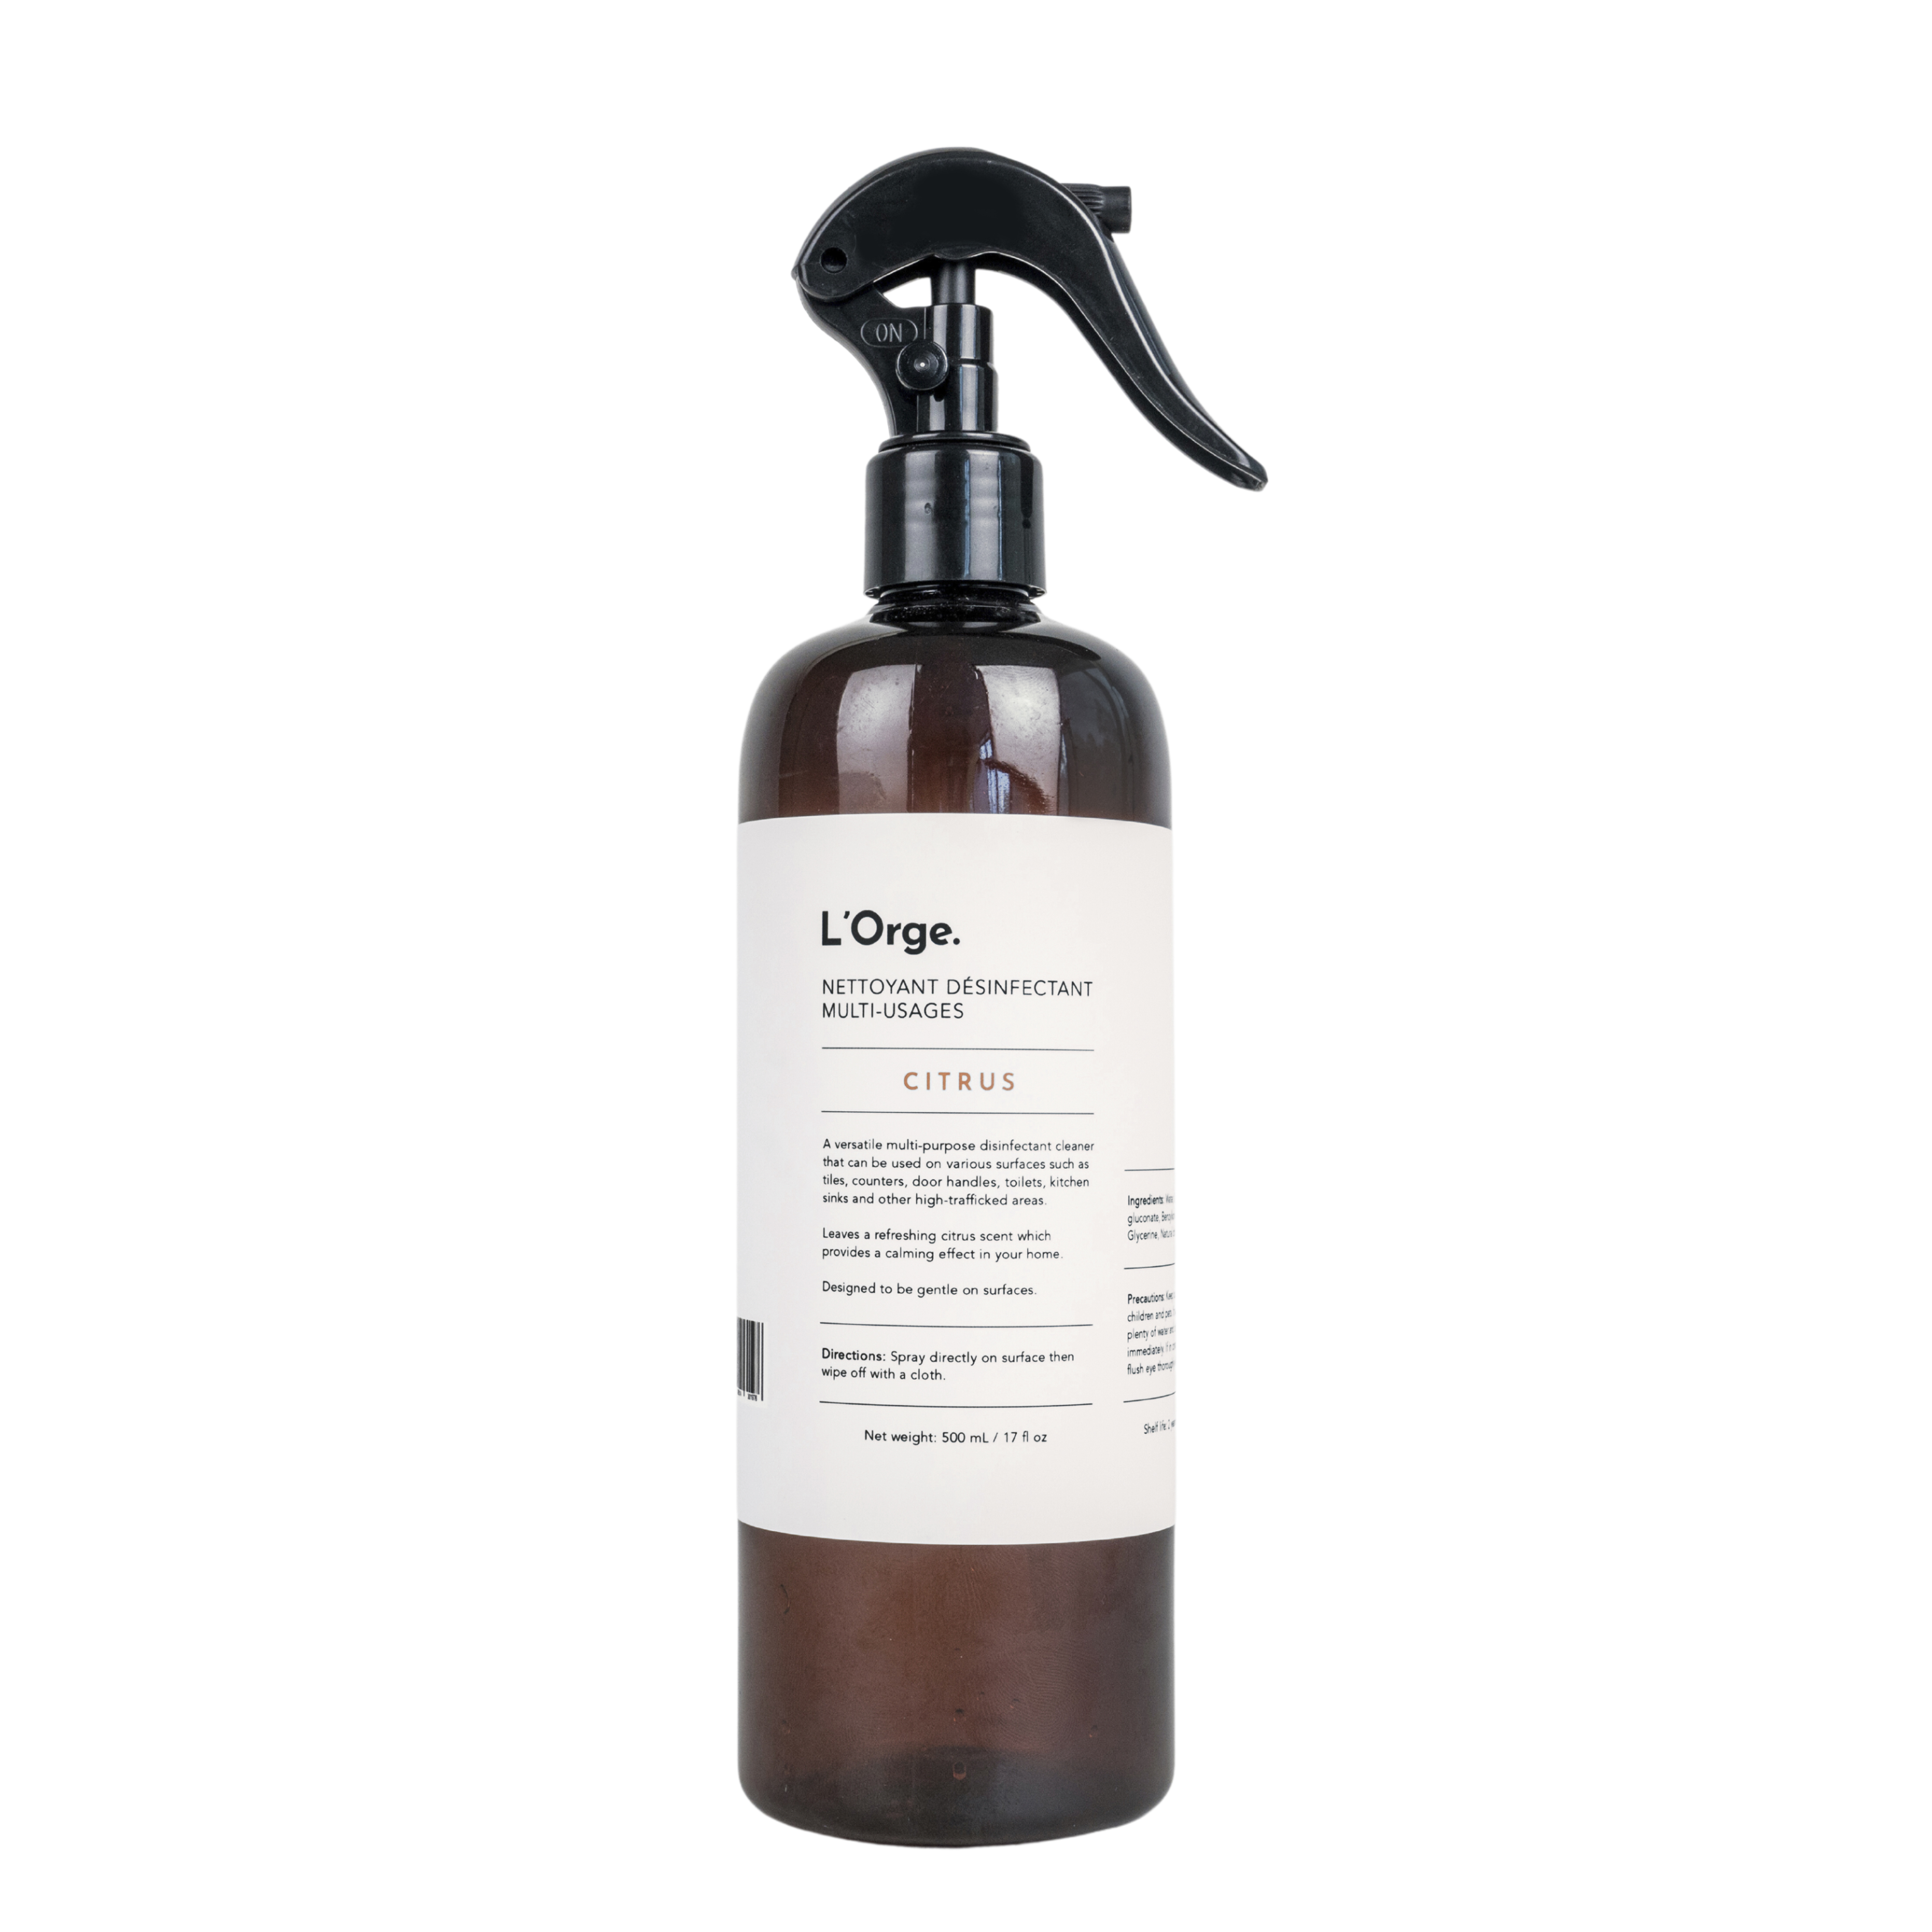 L'Orge Citrus's multi-purpose disinfectant cleaner spray